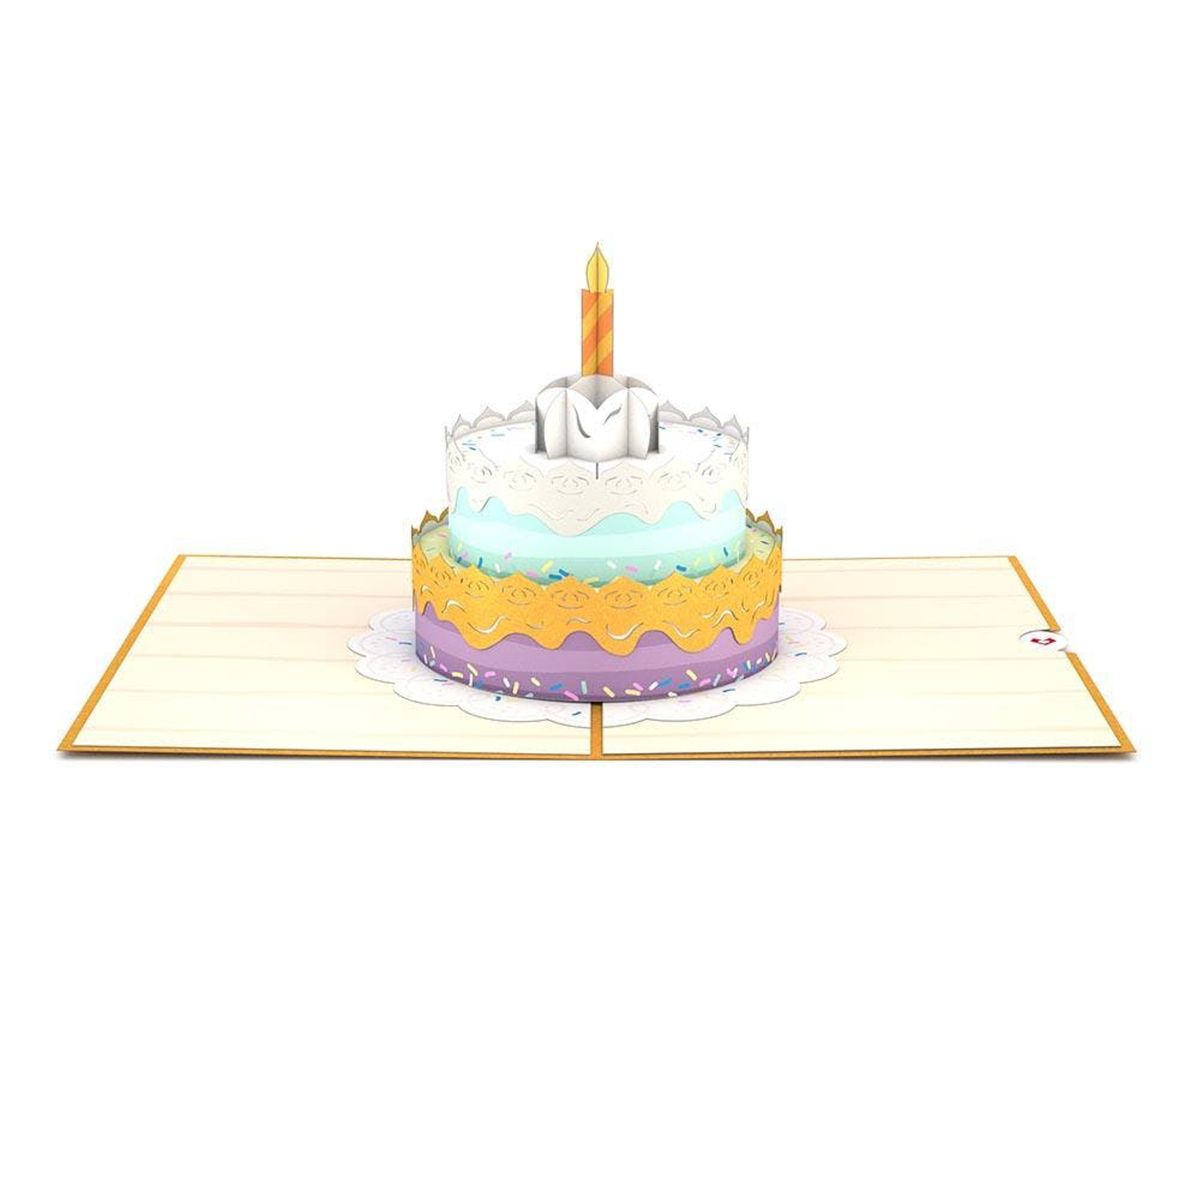 [送料無料] Lovepop Happy Birthday Cake Pop Up 3D グリーティングカード、5インチ x 7インチ、封筒付き [海外通販] Lovepop Happy Birthday Cake Pop Up 3D Greeting Card, 5" x 7", Envelope Included